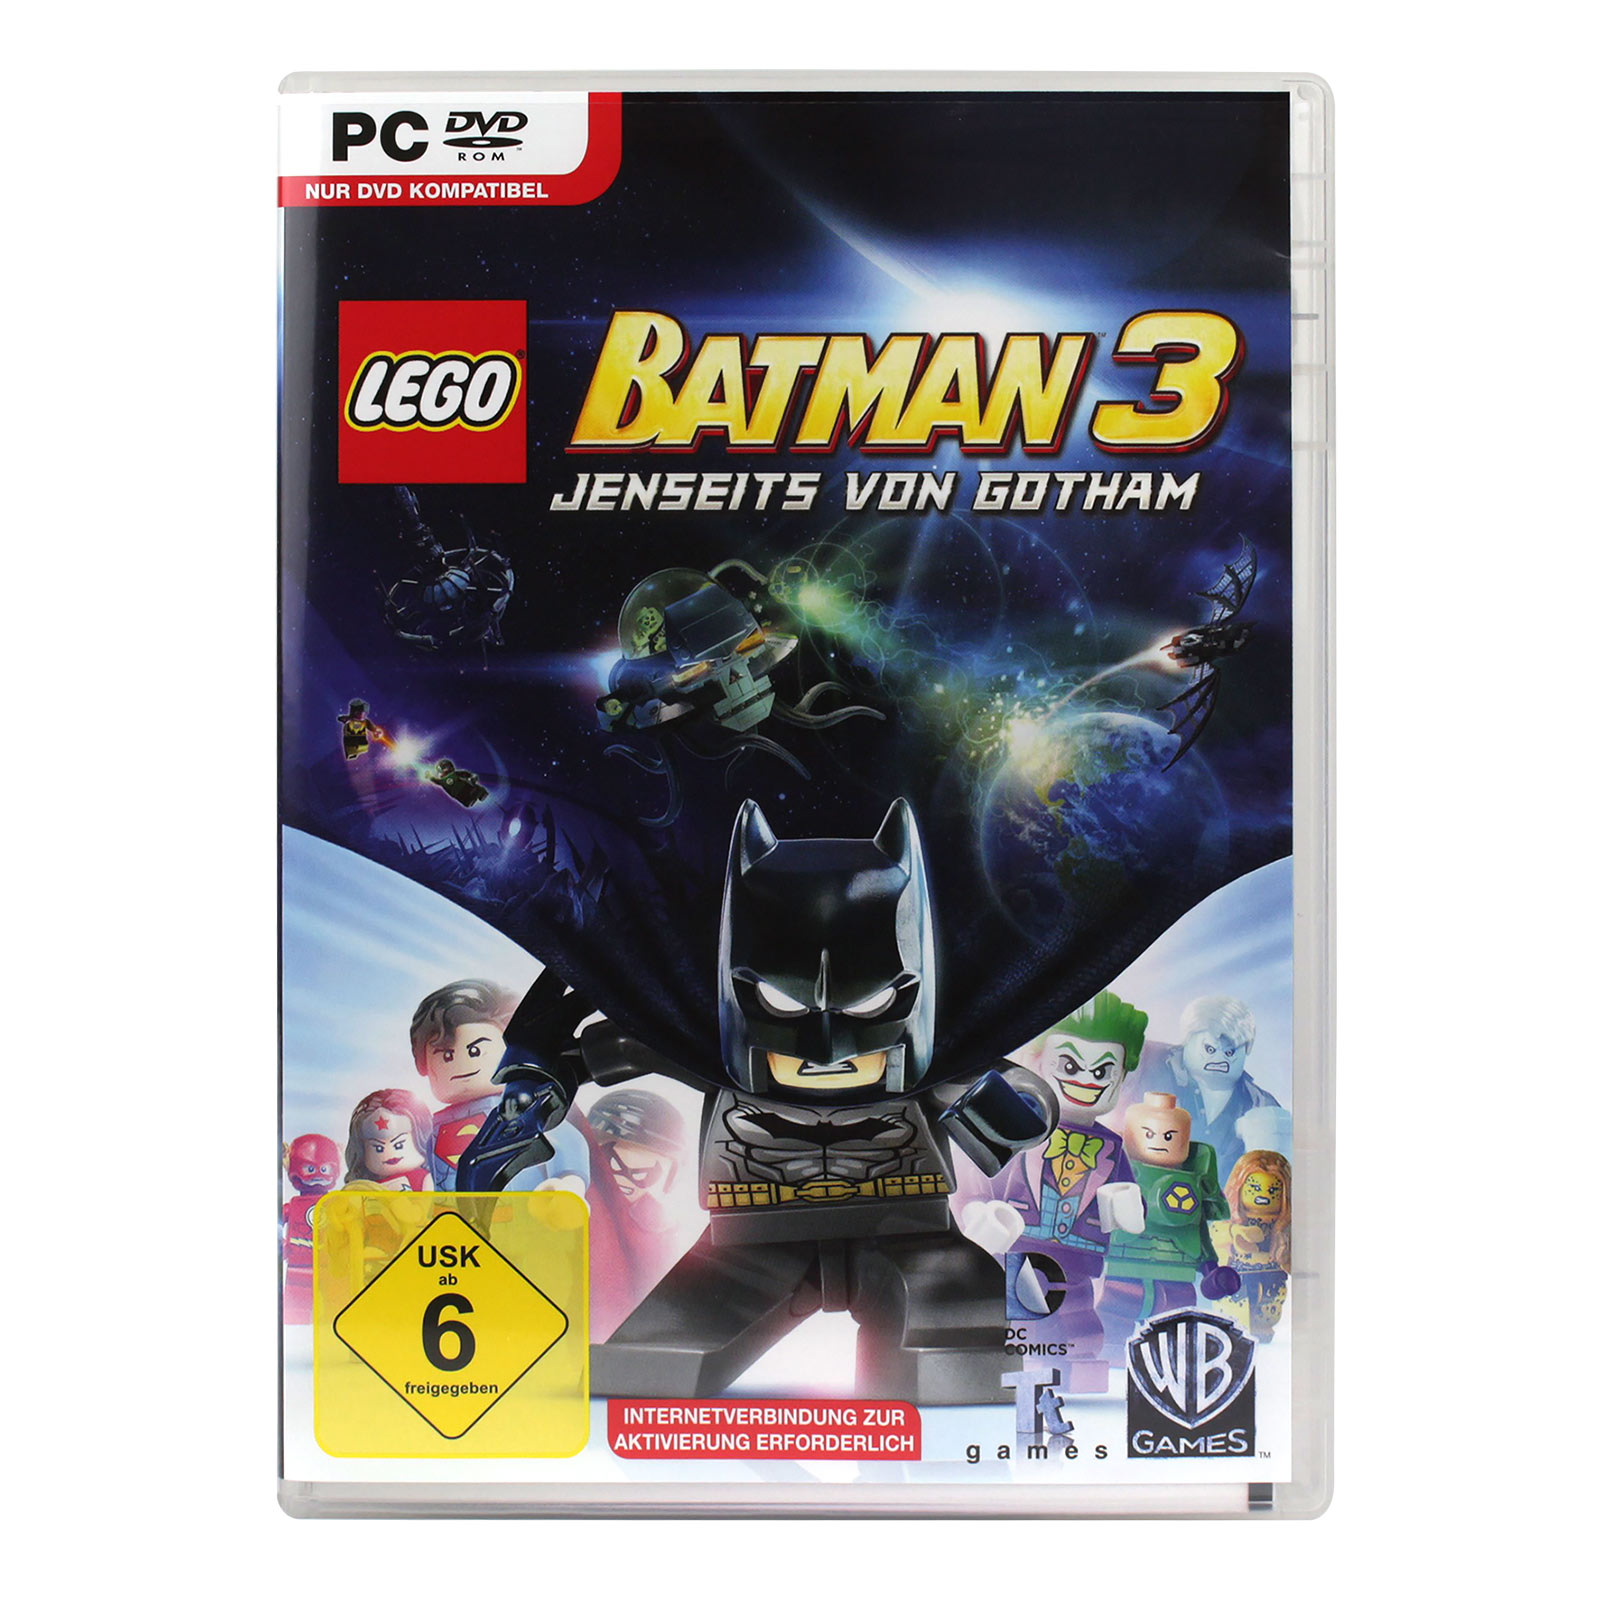 Batman 3 Lego Beyond Gotham PC Game